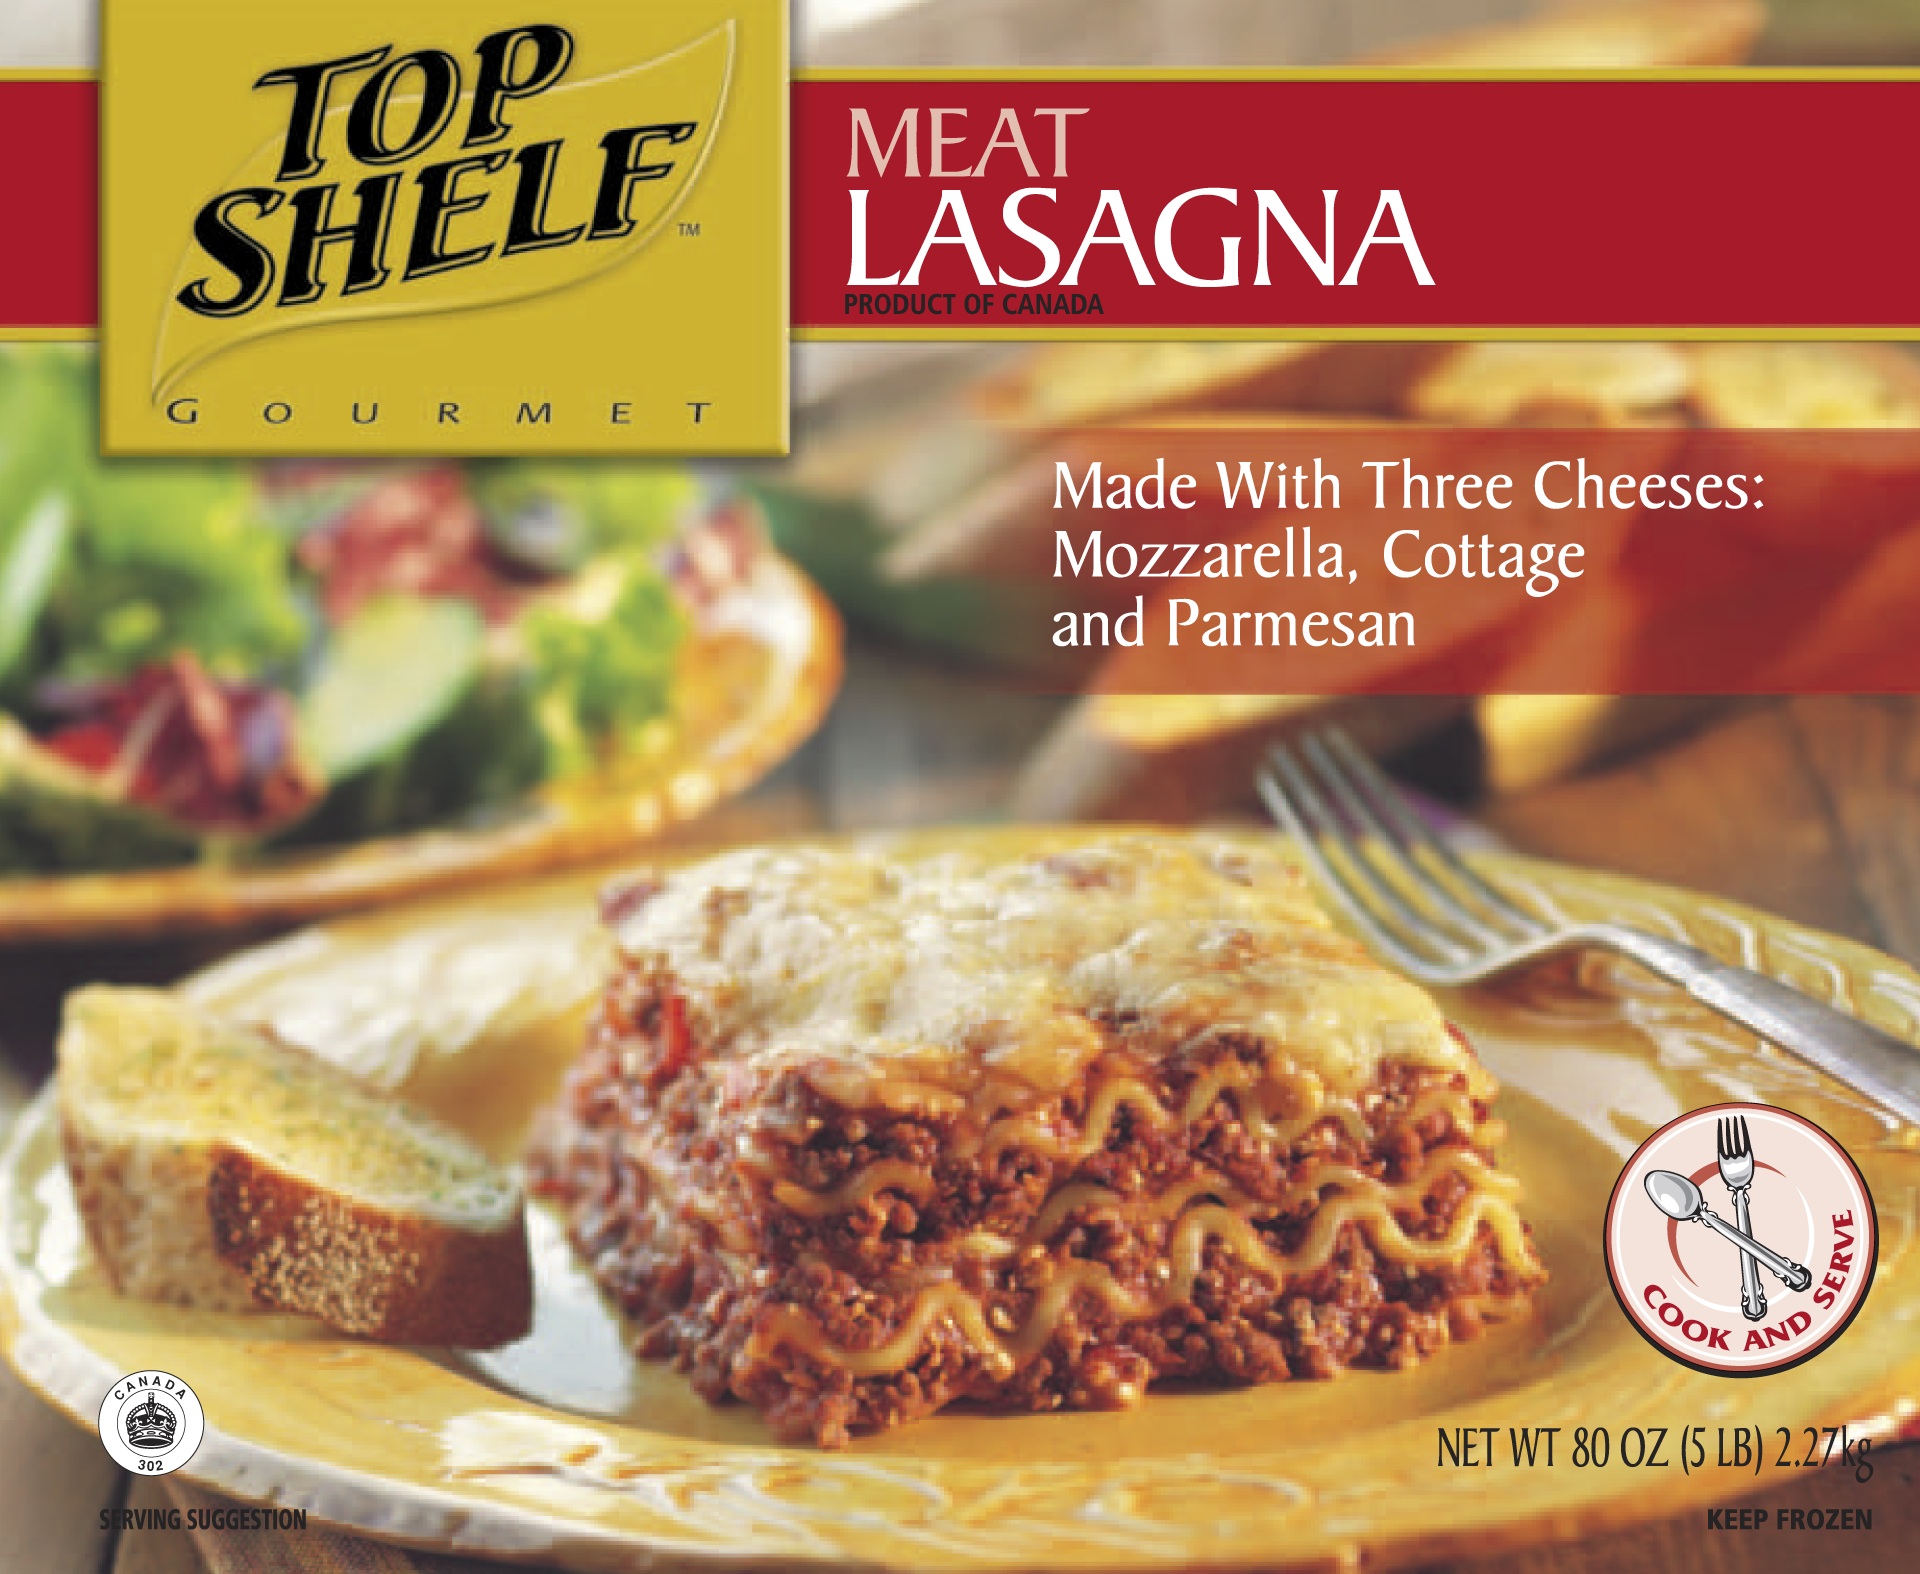 lasagna packaging